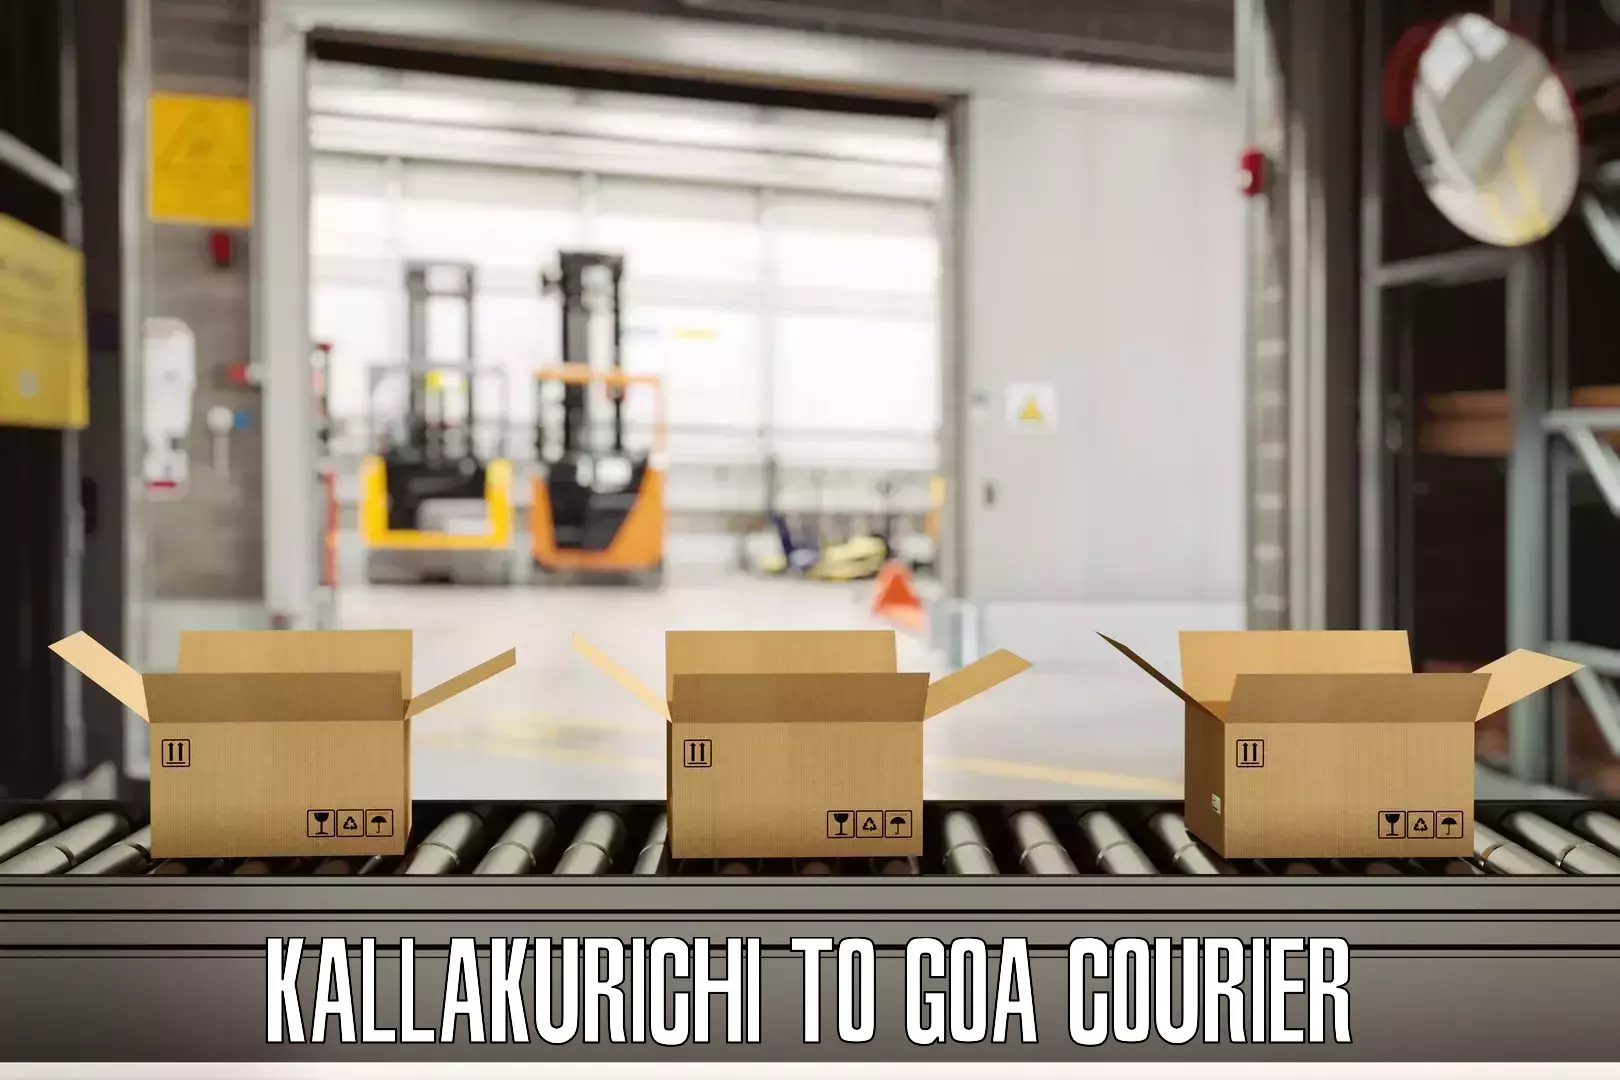 Round trip baggage courier Kallakurichi to NIT Goa